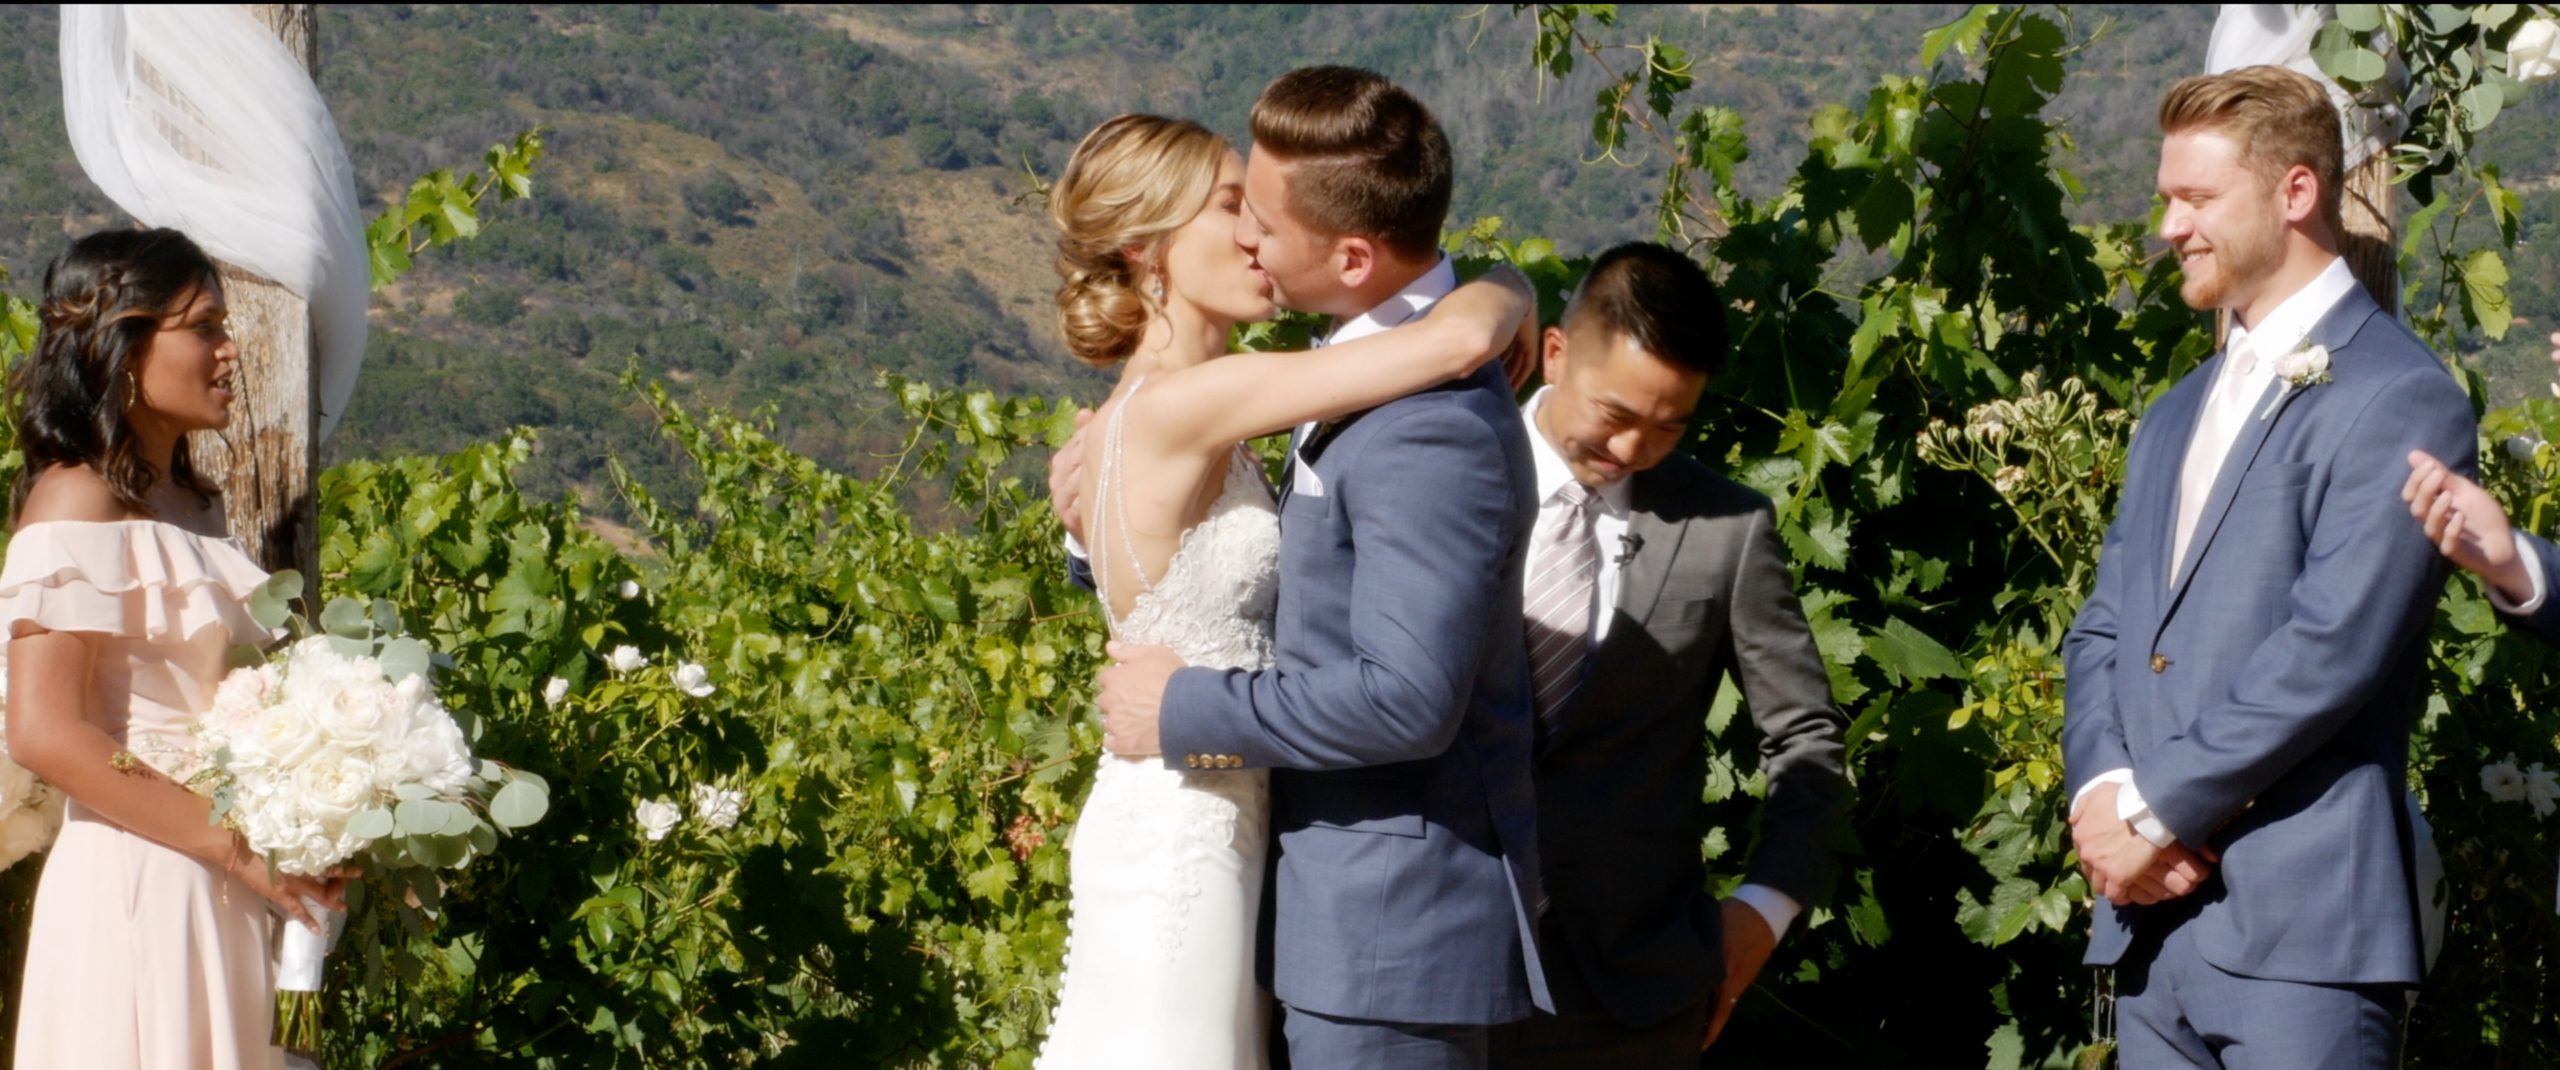 Valley of the Moon Winery Wedding Video {Jack + Laura} Glen Ellen